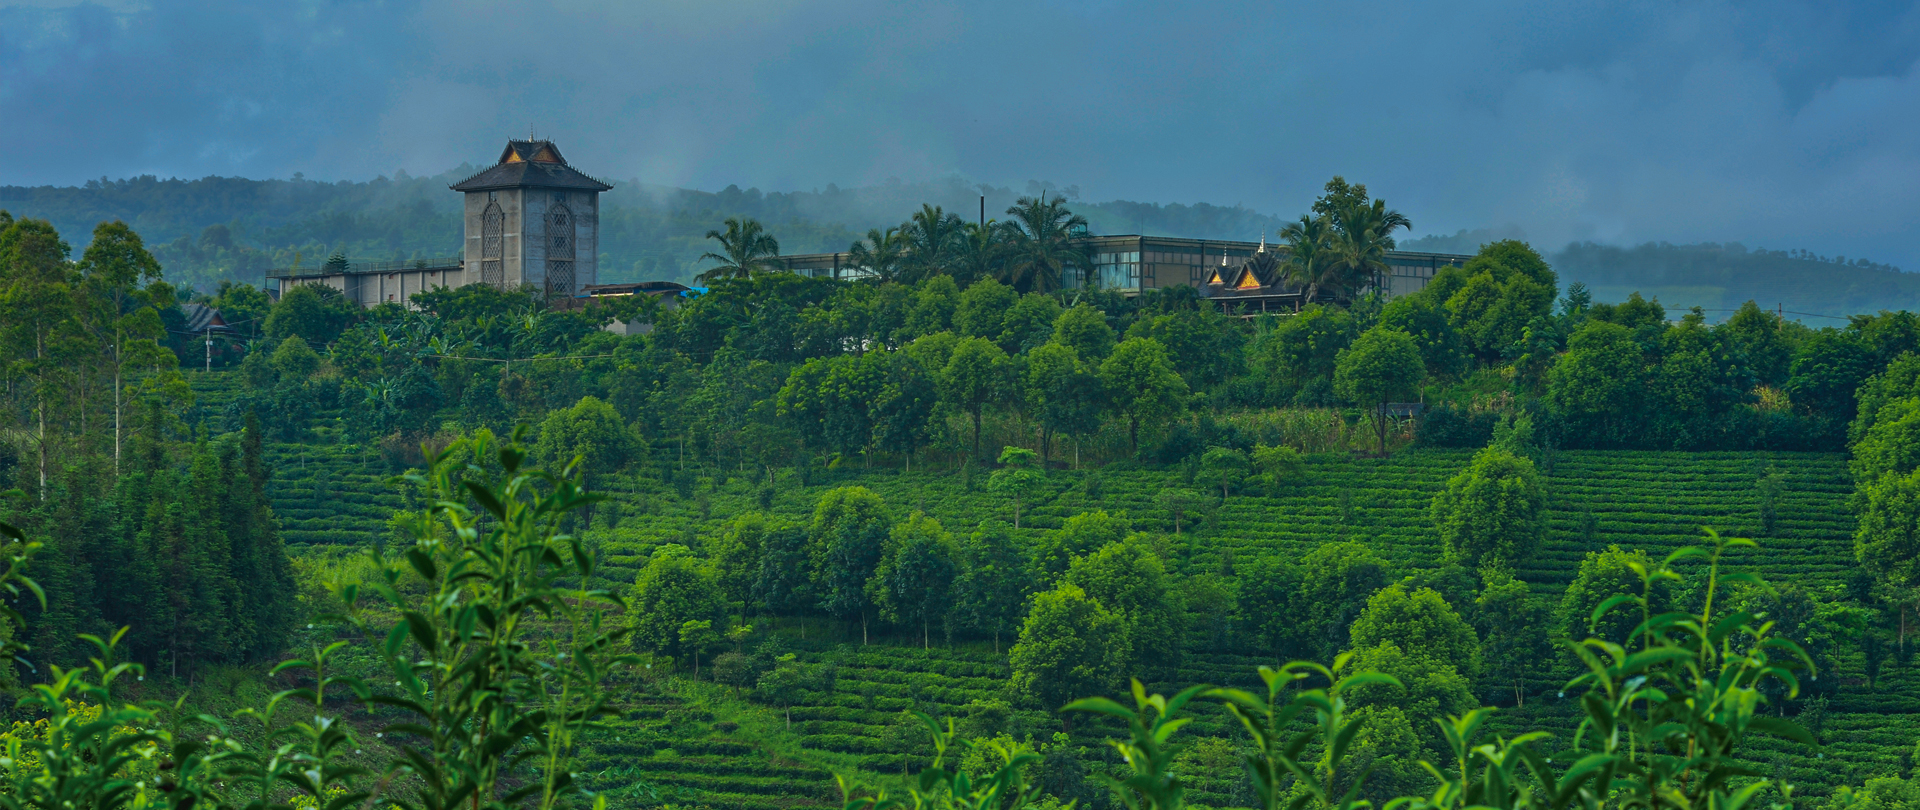 茶旅世界·最美茶园参评丨柏联普洱茶现代农业庄园万亩有机疏林茶园